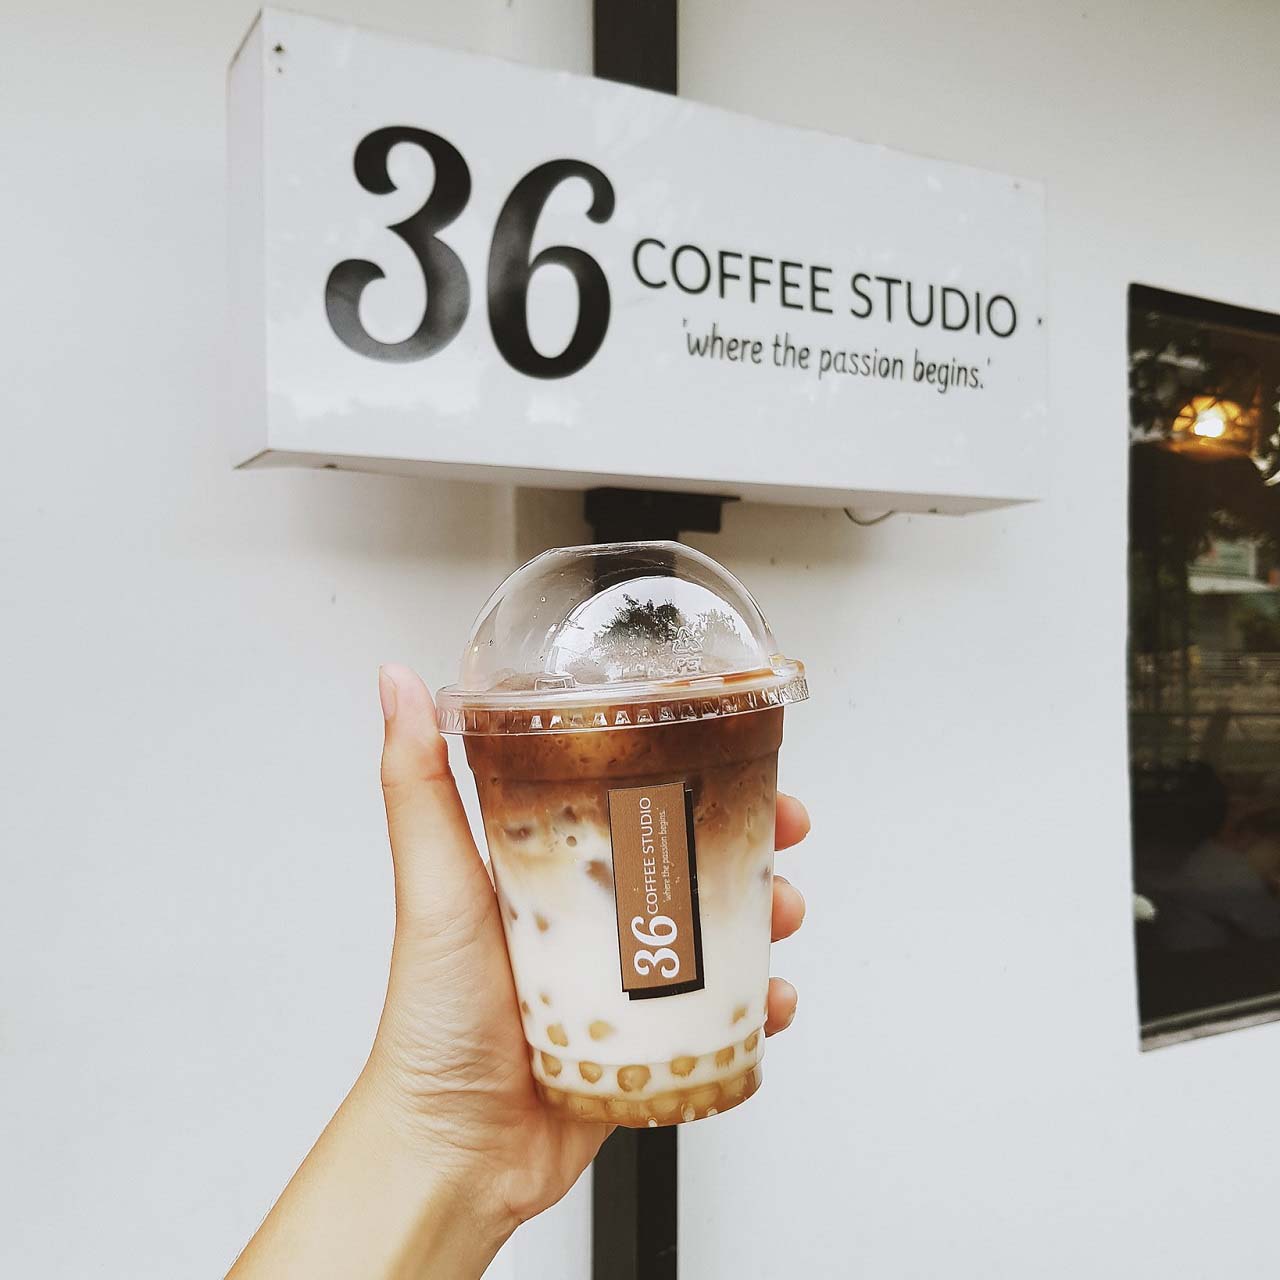 Check-in 36 Coffee Studio - Quán cafe chụp hình đẹp ở Cần Thơ